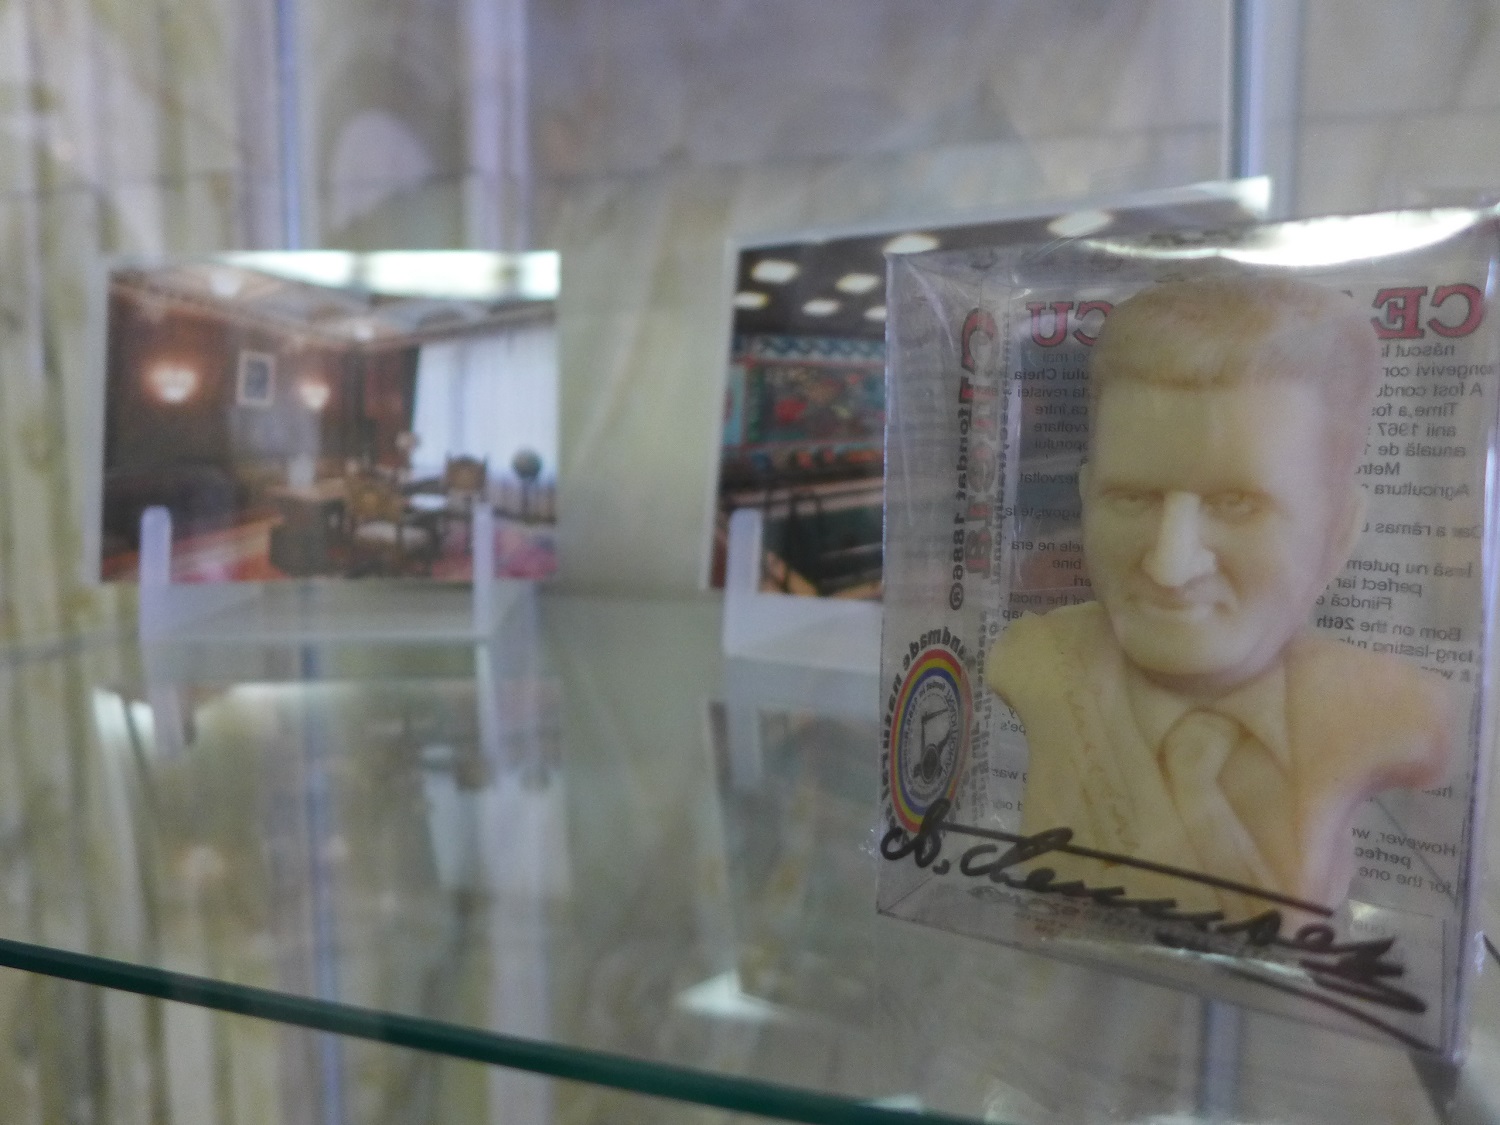 A la fin de la visite, on peut acheter un souvenir : par exemple un savon Nicolae Ceausescu !